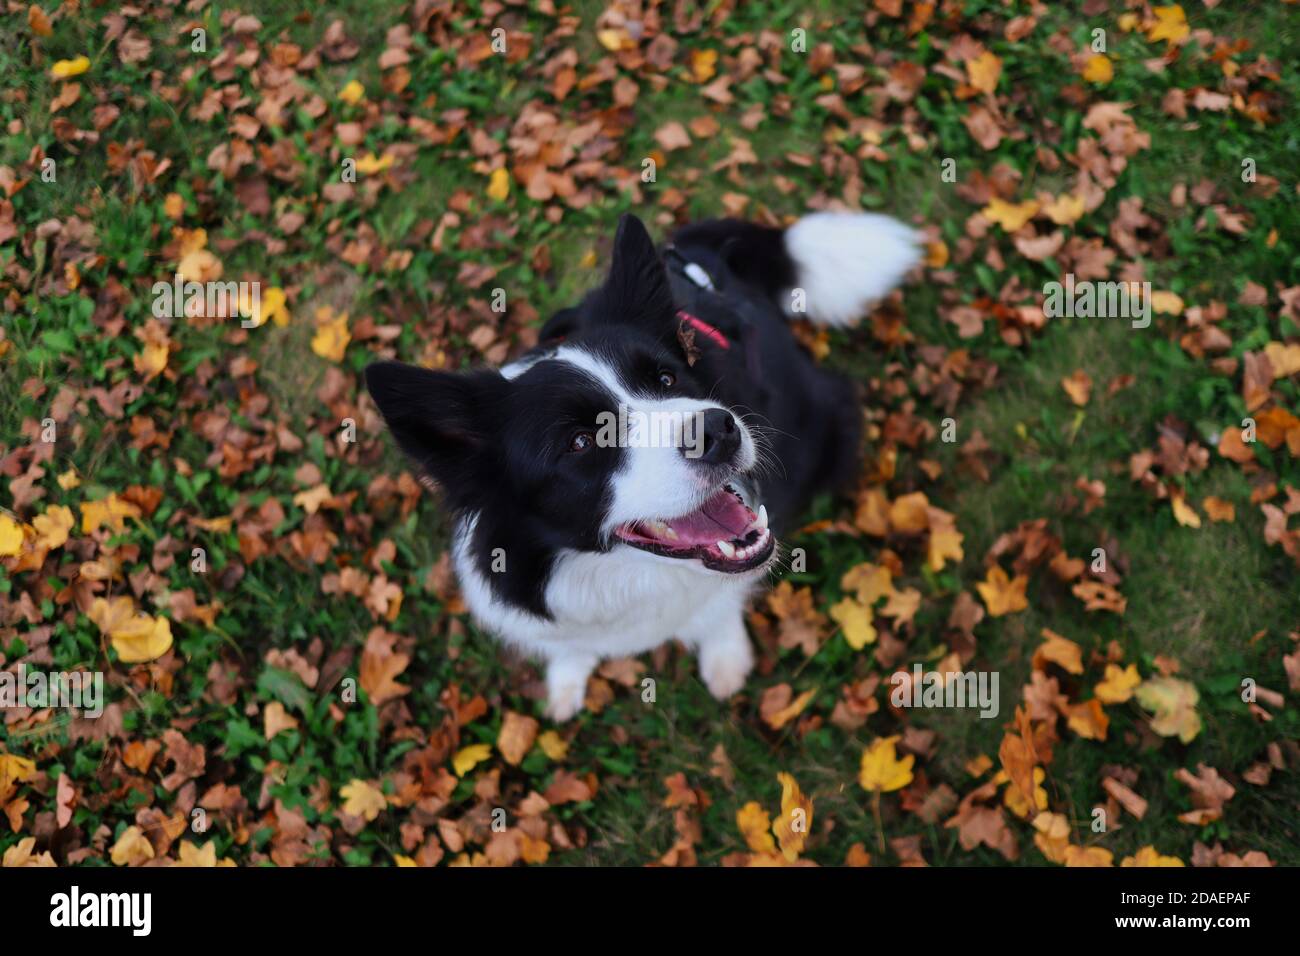 Top-down sorridente Border Collie Dog seduto su erba e caduto foglie d'autunno durante la stagione autunnale. Felice animale bianco e nero. Foto Stock